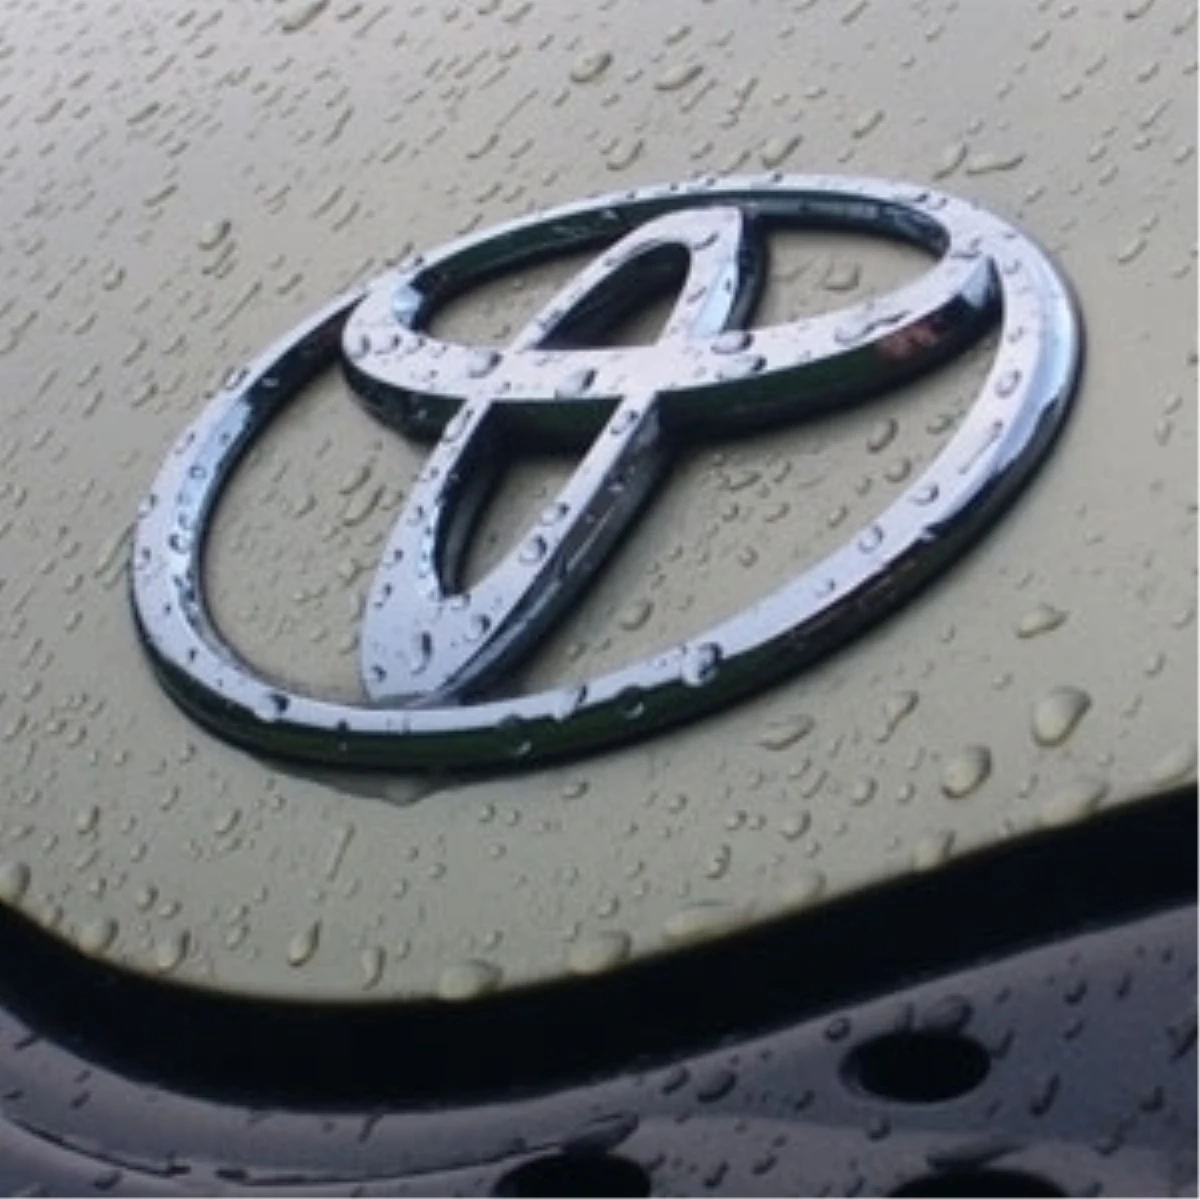 Toyota Türkiye, Gelecek Yıl Kapasite Kullanımını Artıracak